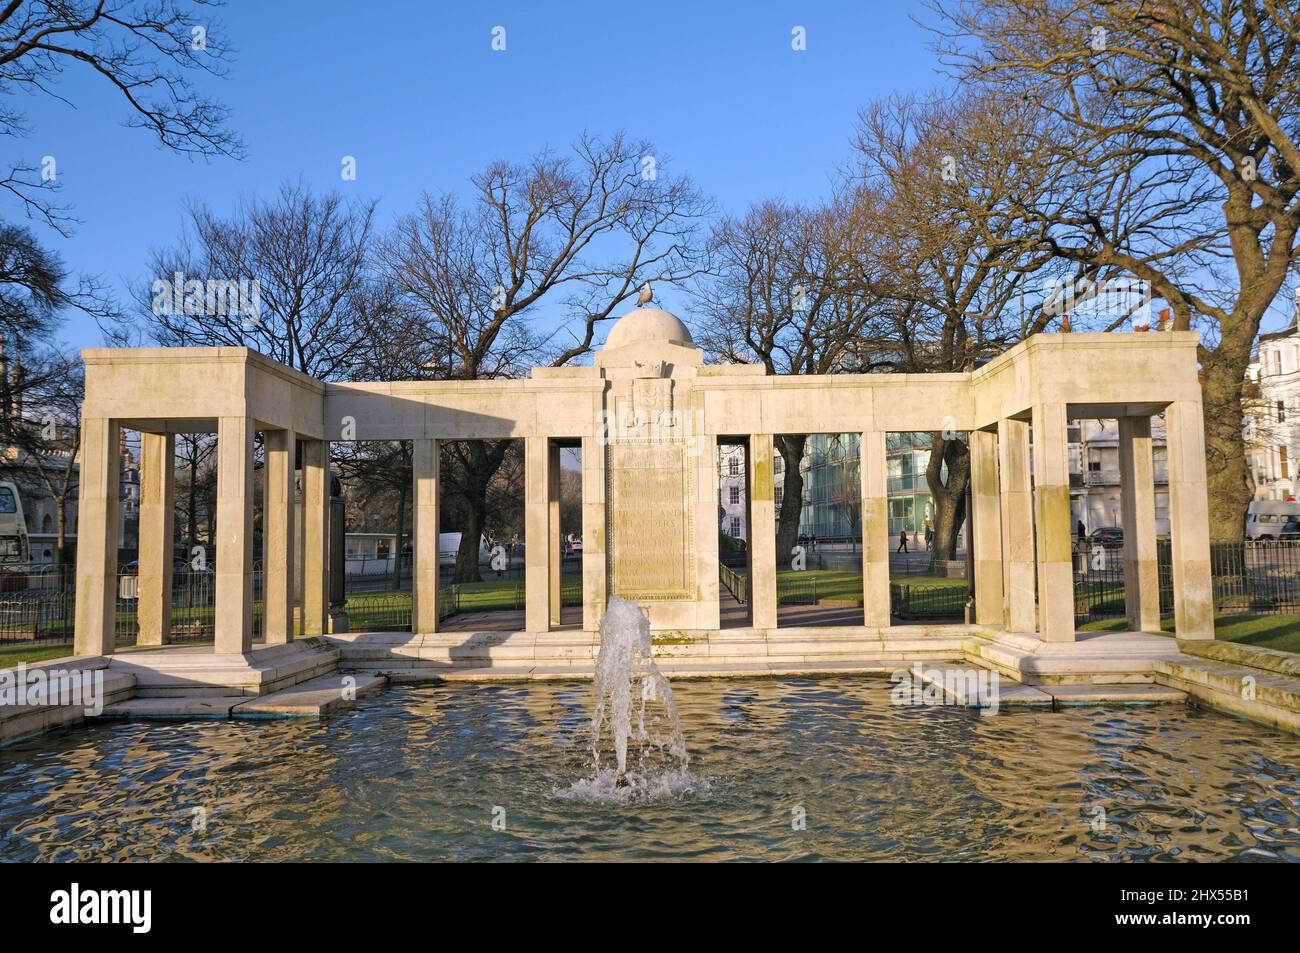 Brighton War Memorial, commémorant les morts de la première Guerre mondiale, Old Steine Gardens, ville de Brighton et Hove, East Sussex, Angleterre, Royaume-Uni Banque D'Images